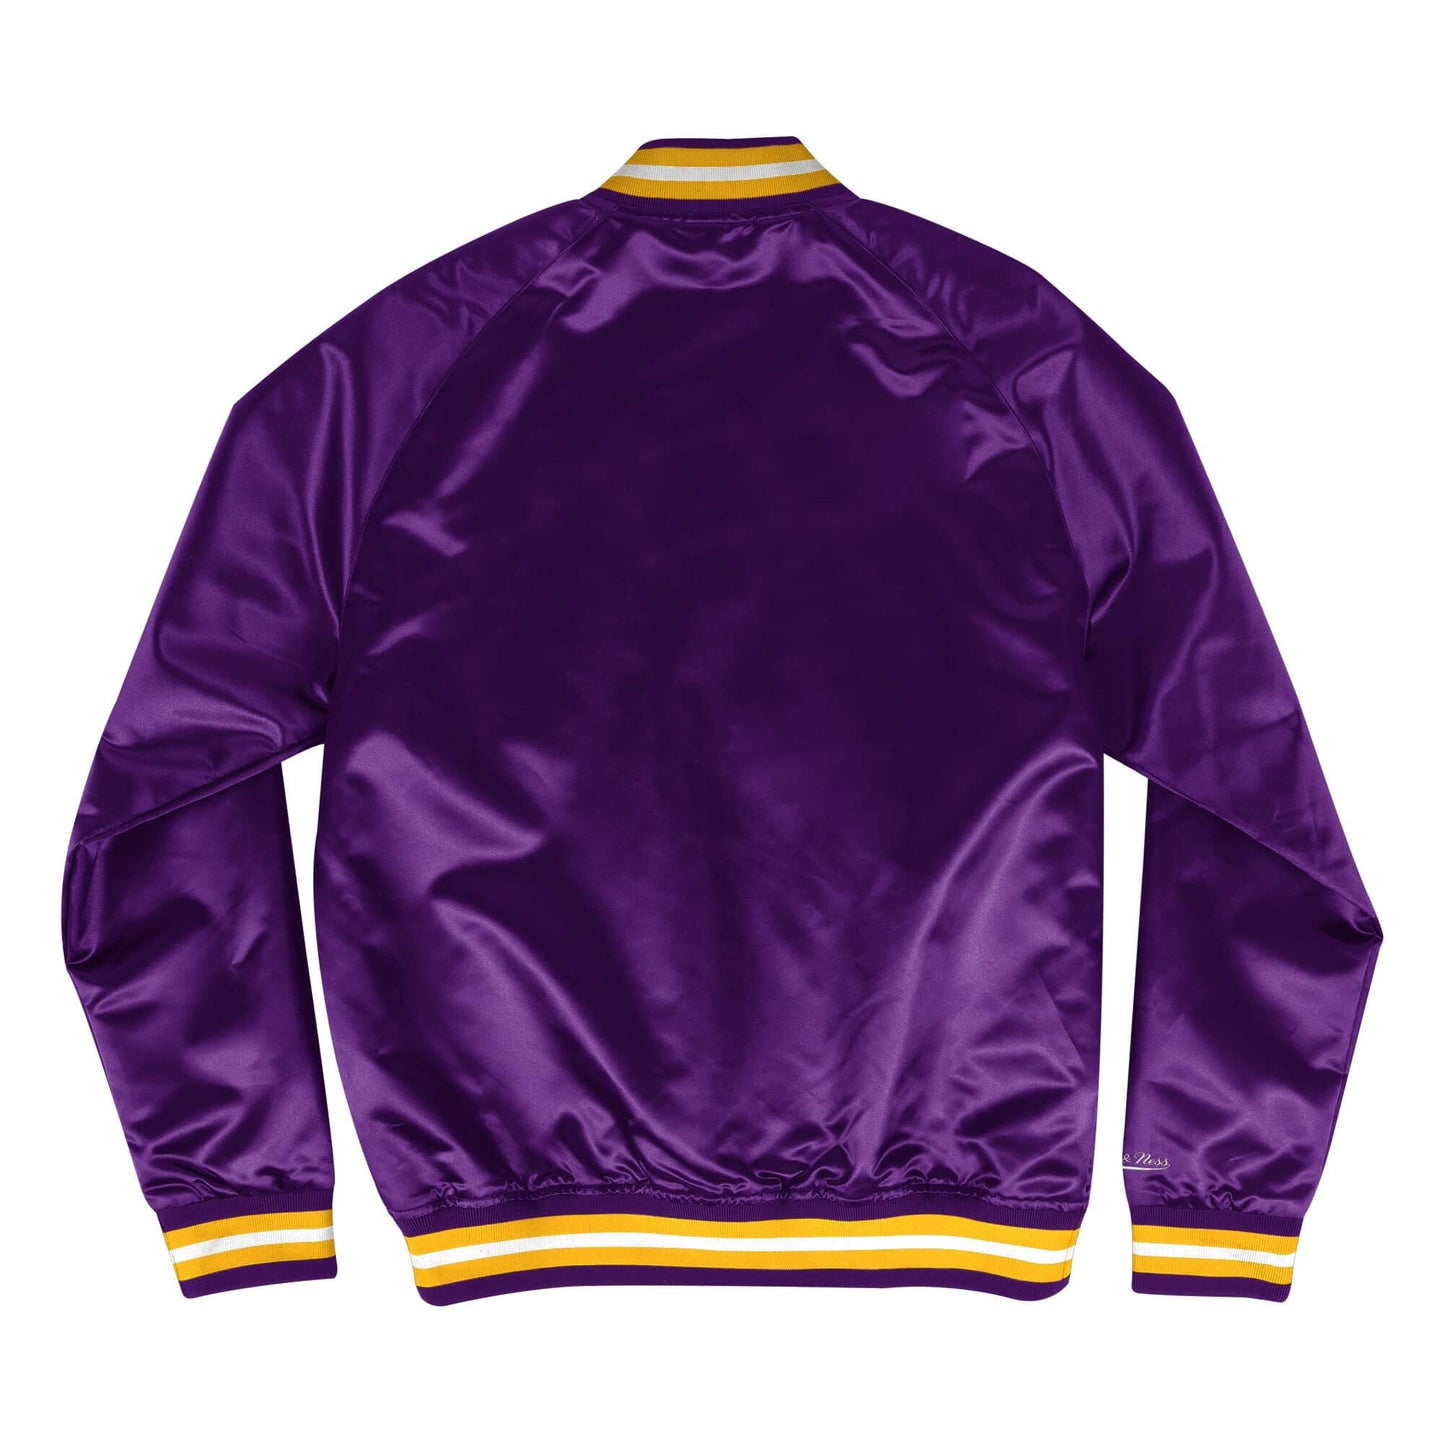 Mitchell & Ness - Lakers Satin Jacket